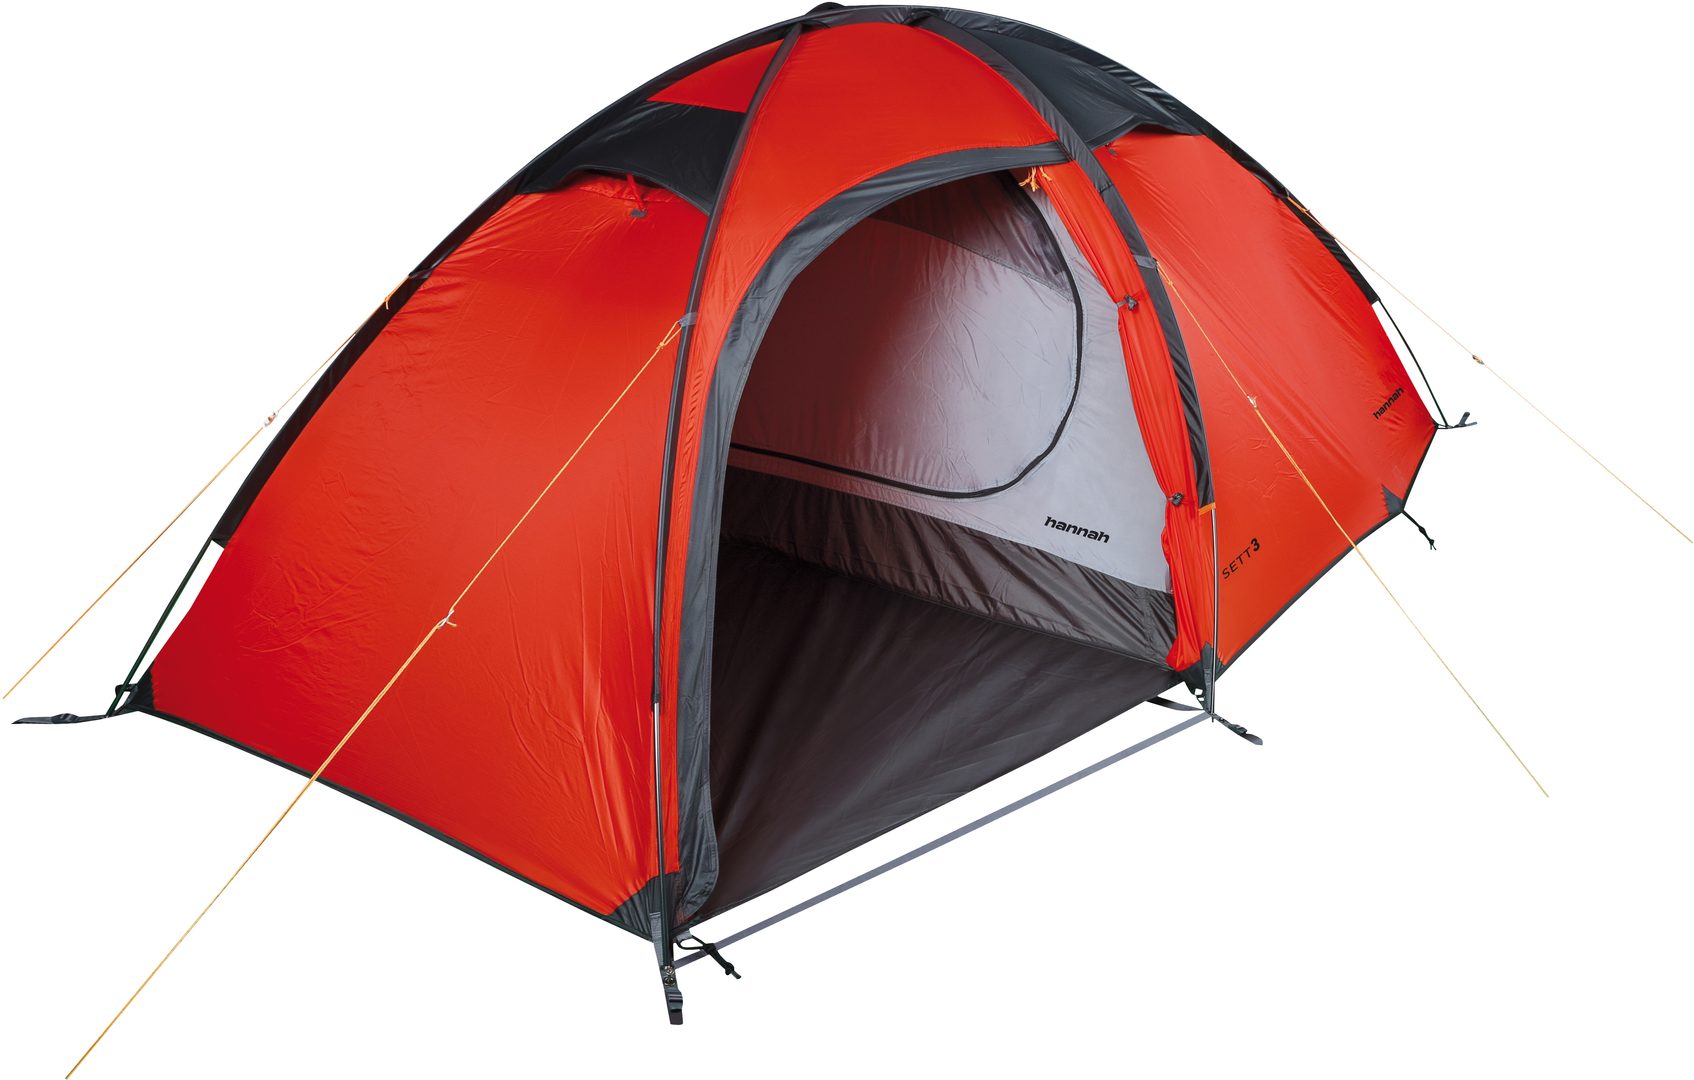 Outdoorweb.eu - Tents HANNAH - outdoorové oblečení a vybavení shop